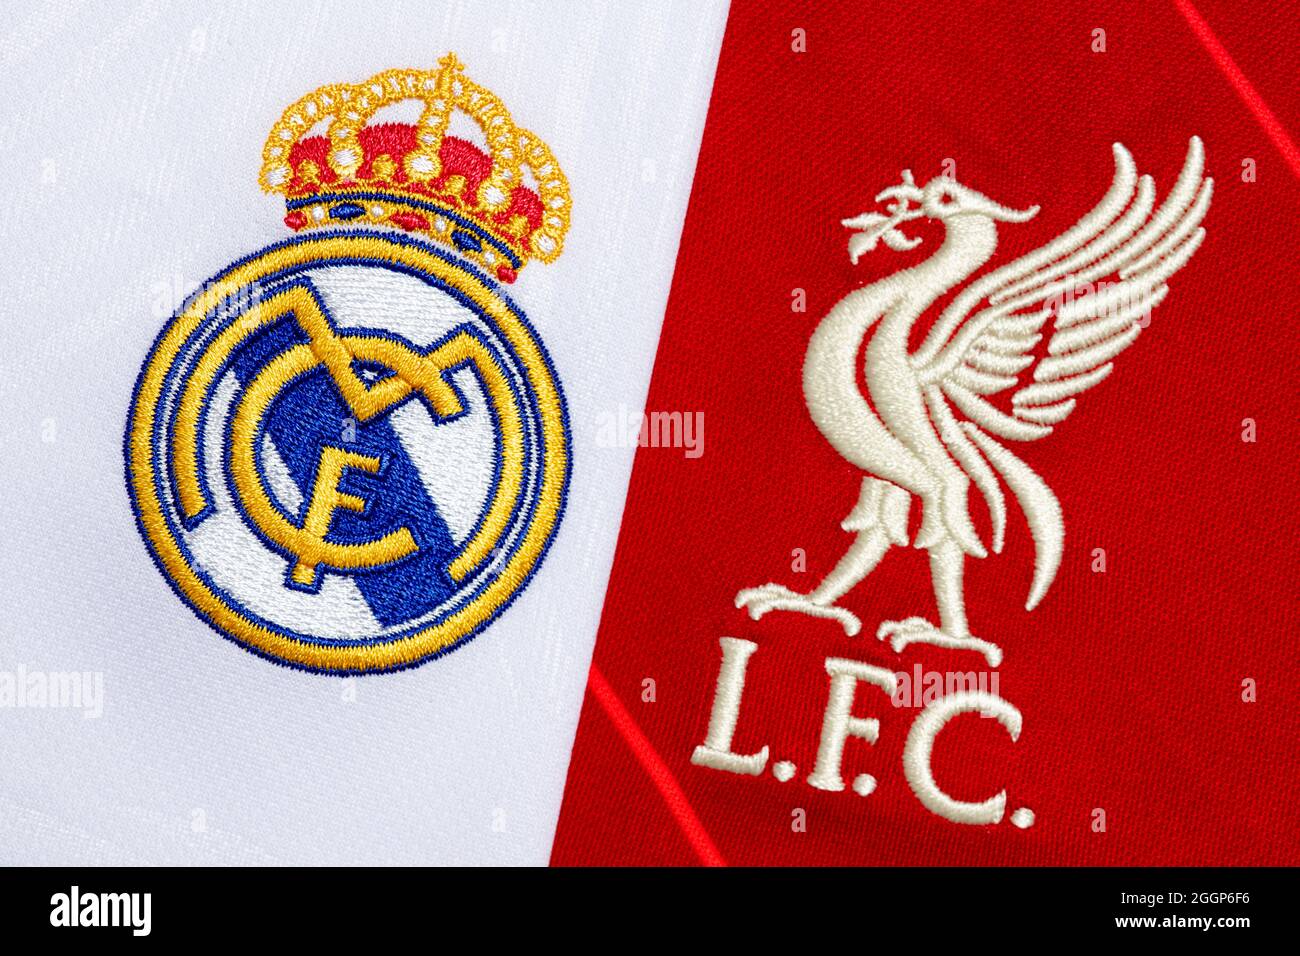 Primo piano dello stemma del club Liverpool & Real Madrid. Foto Stock